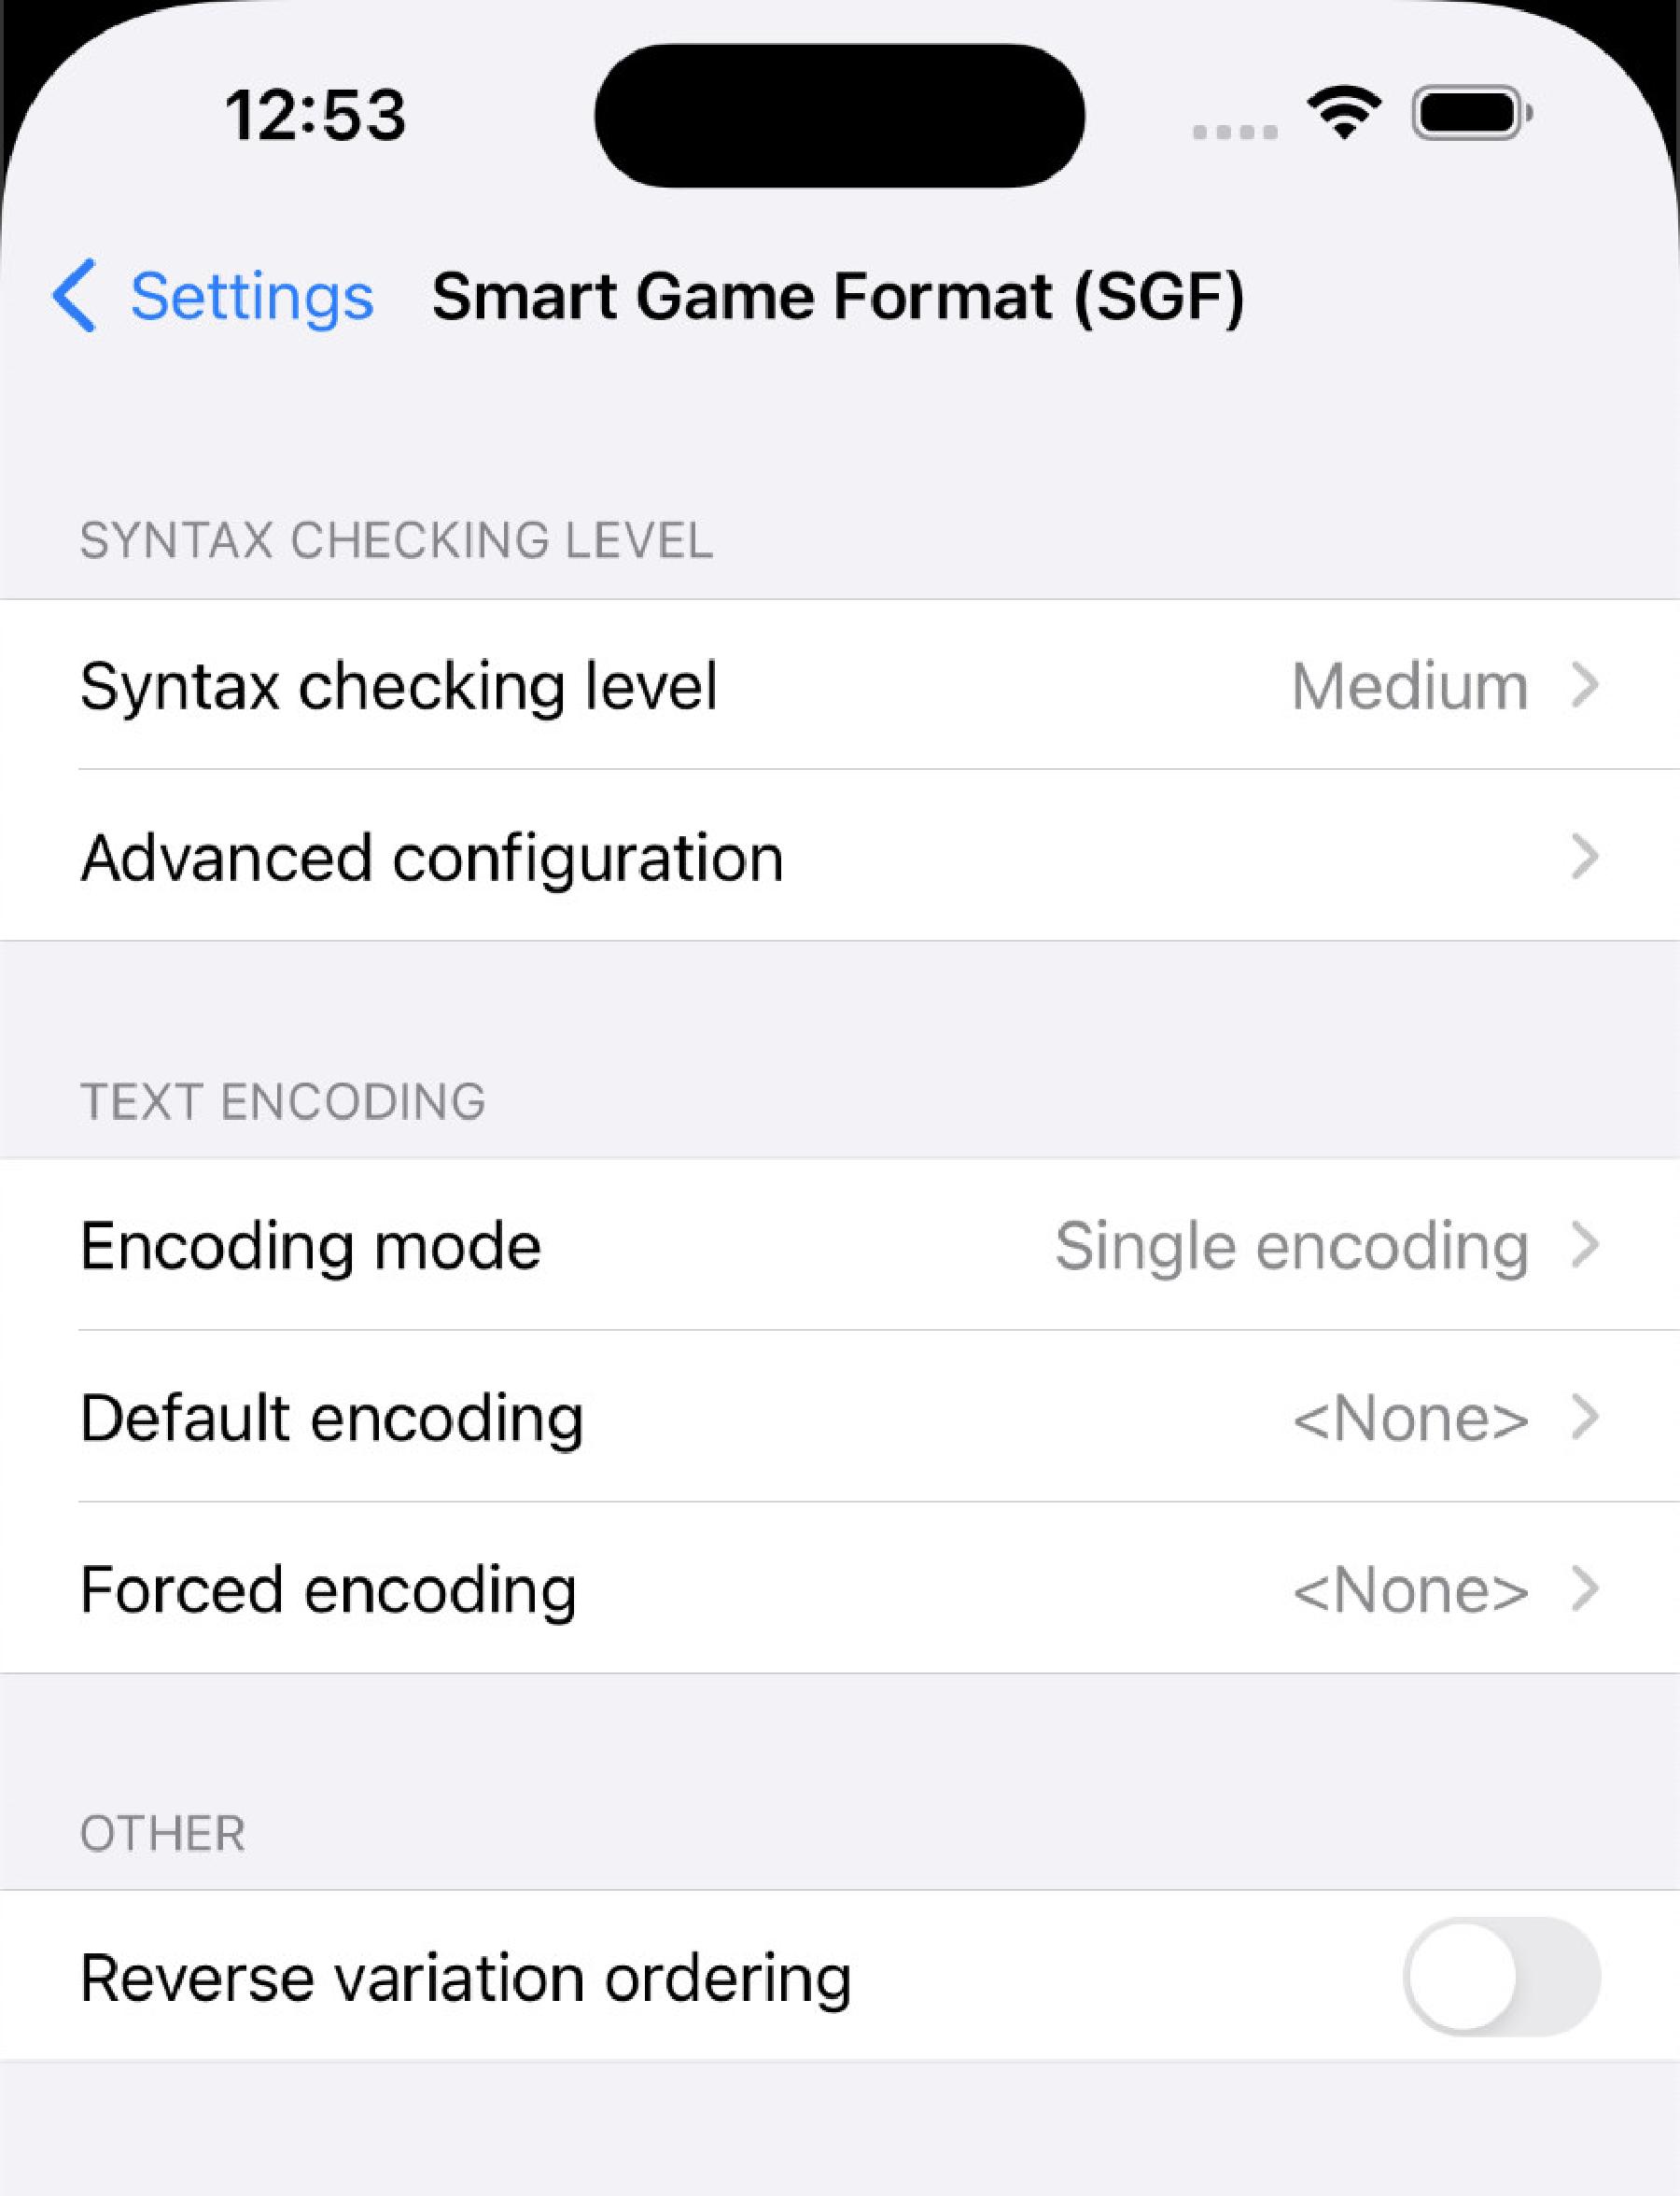 Smart Game Format (SGF) settings screen